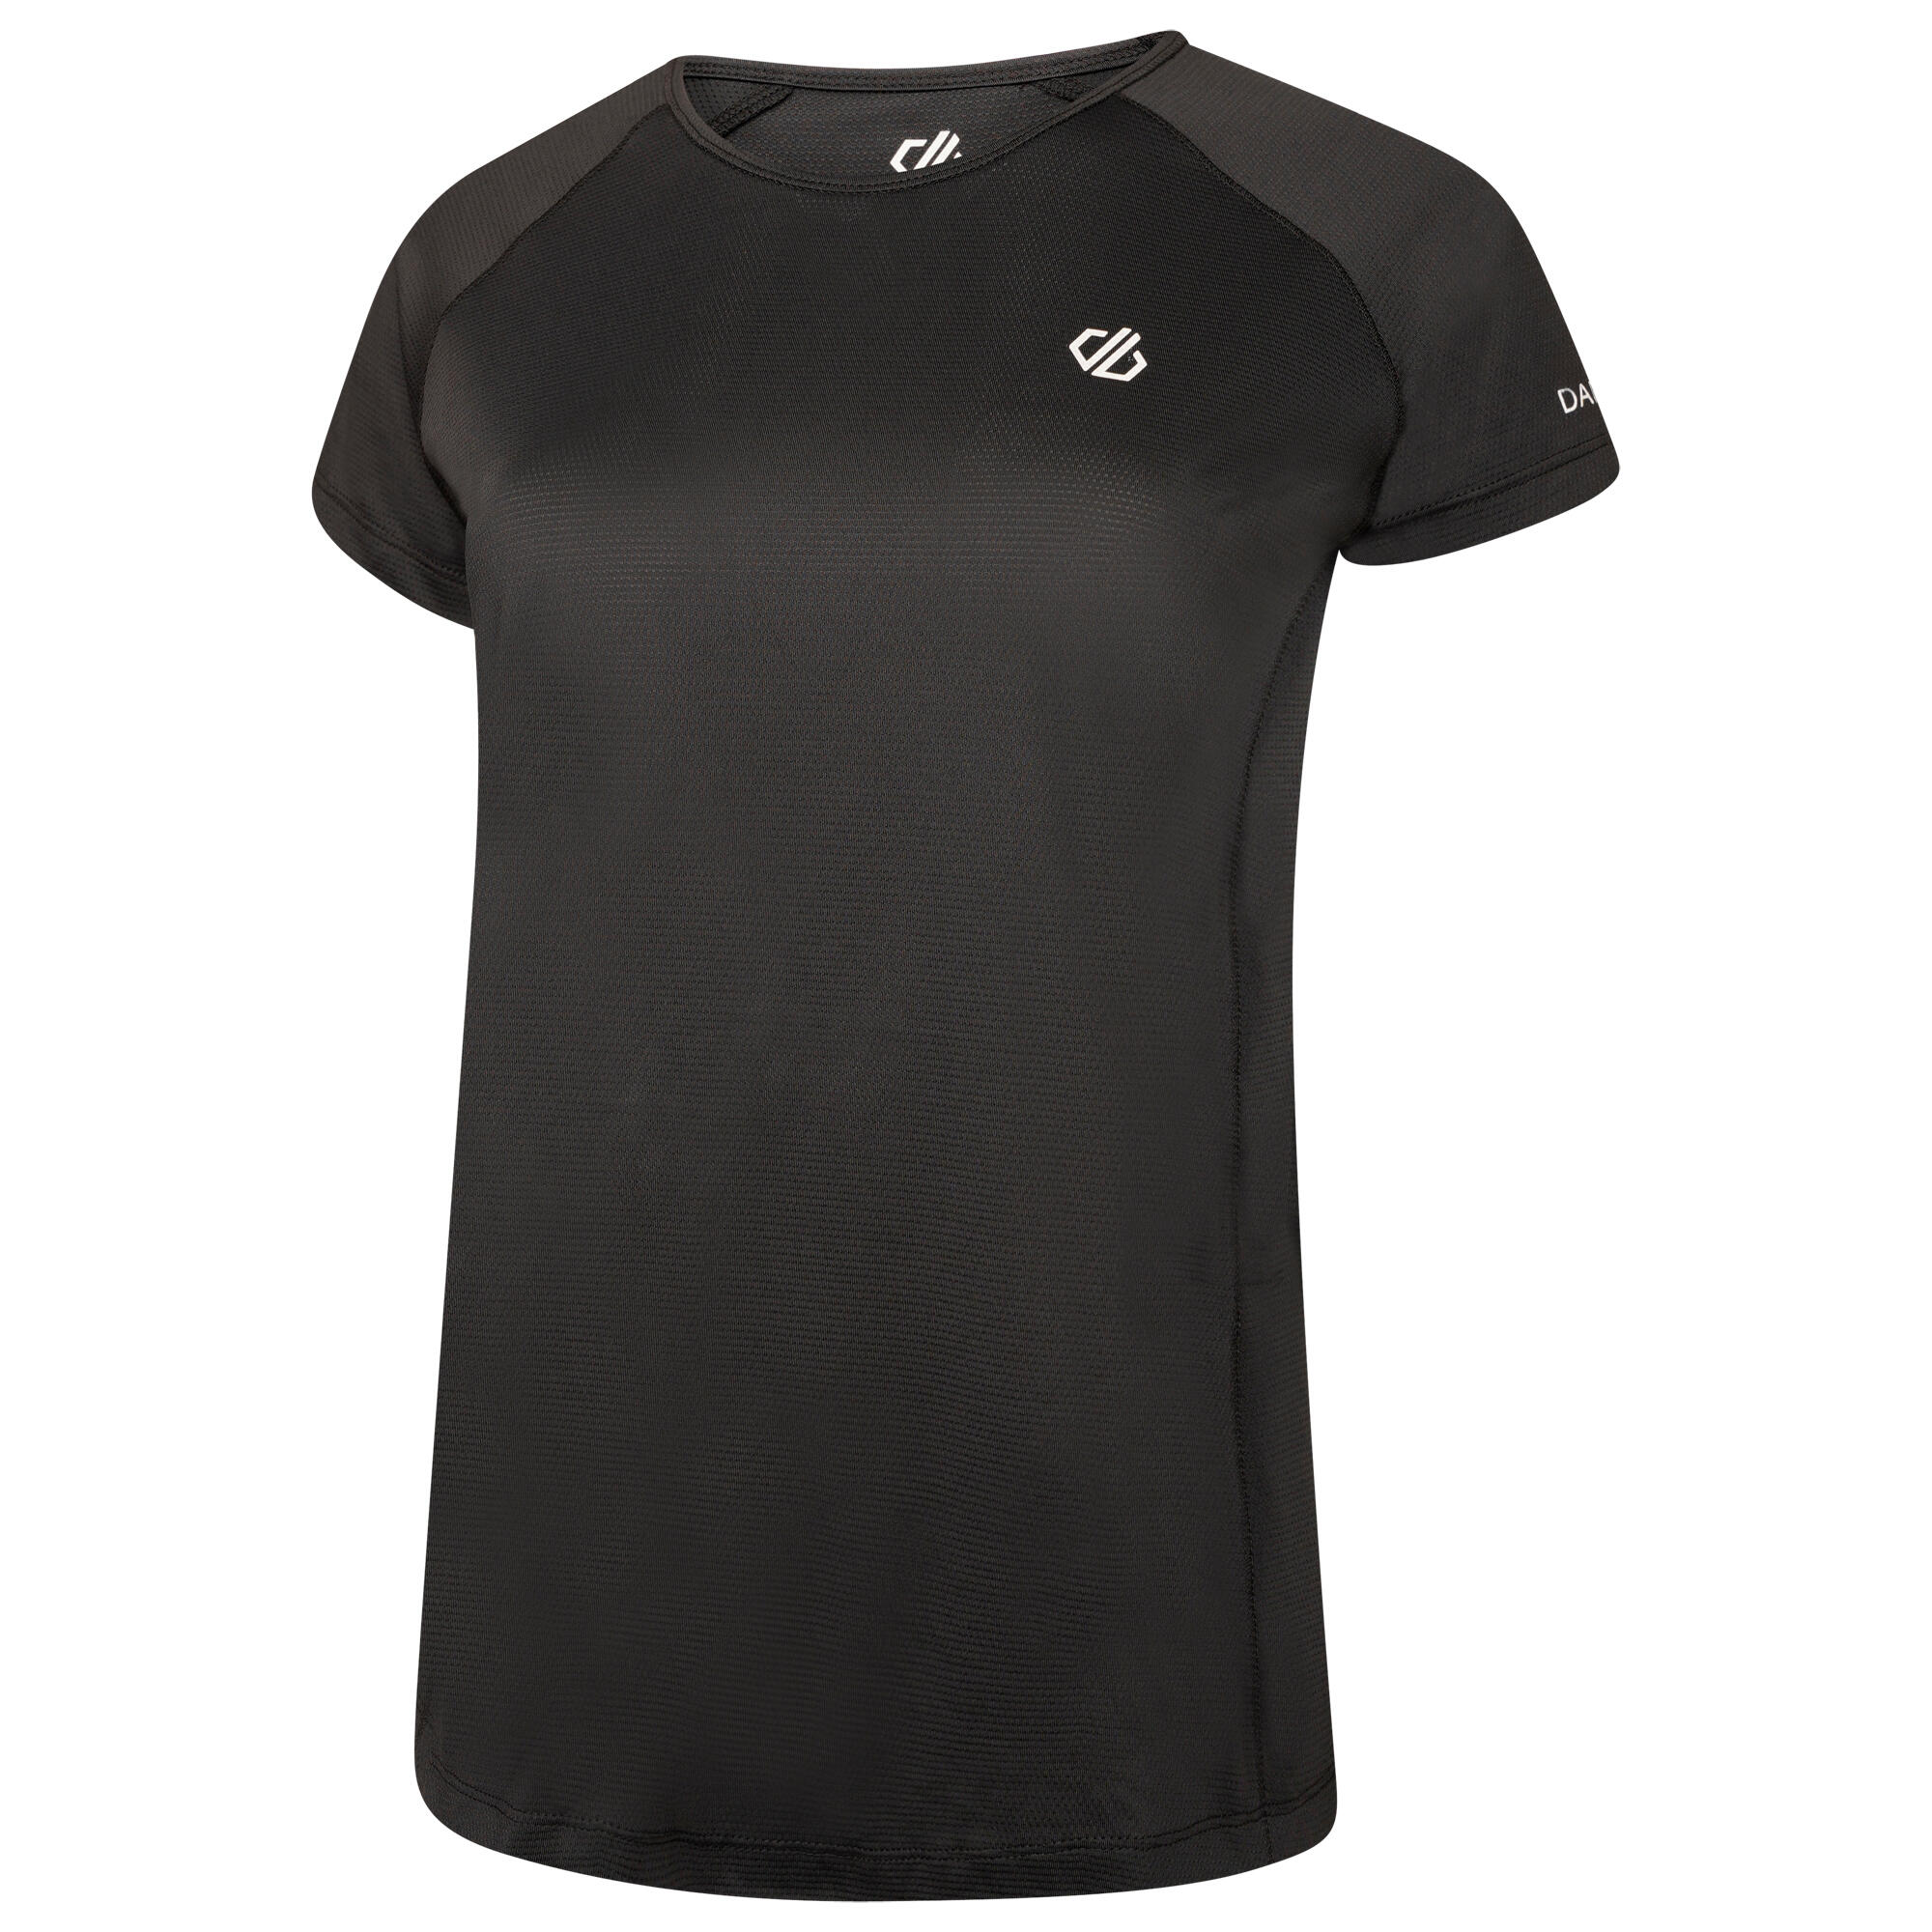 Corral Women's Fitness Short Sleeve T-Shirt - Black 5/7